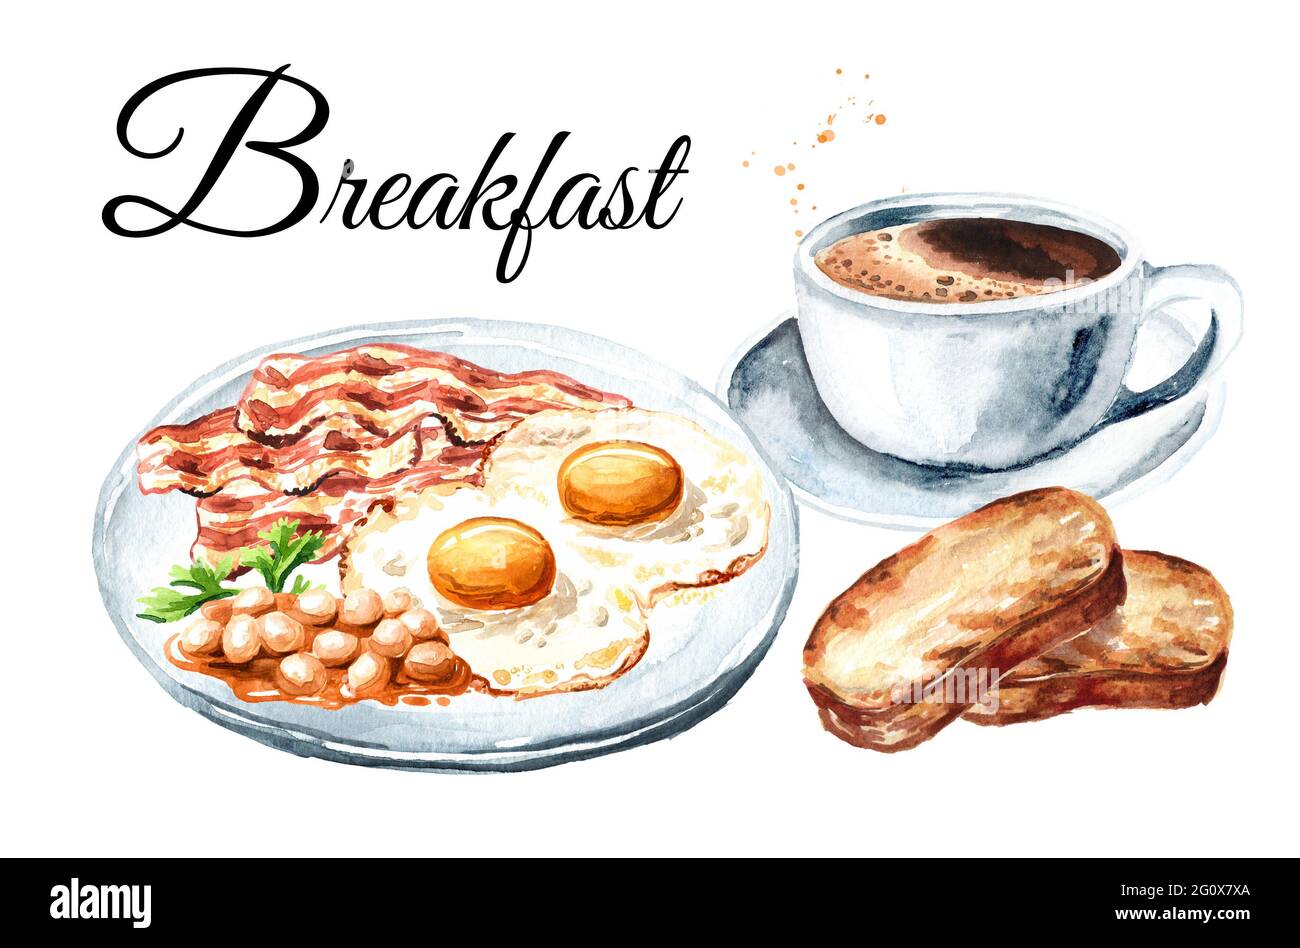 Petit-déjeuner anglais traditionnel avec œufs frits, morceaux de becon, haricots dans la sauce, toasts et une tasse de café. Isoler l'illustration aquarelle dessinée à la main Banque D'Images